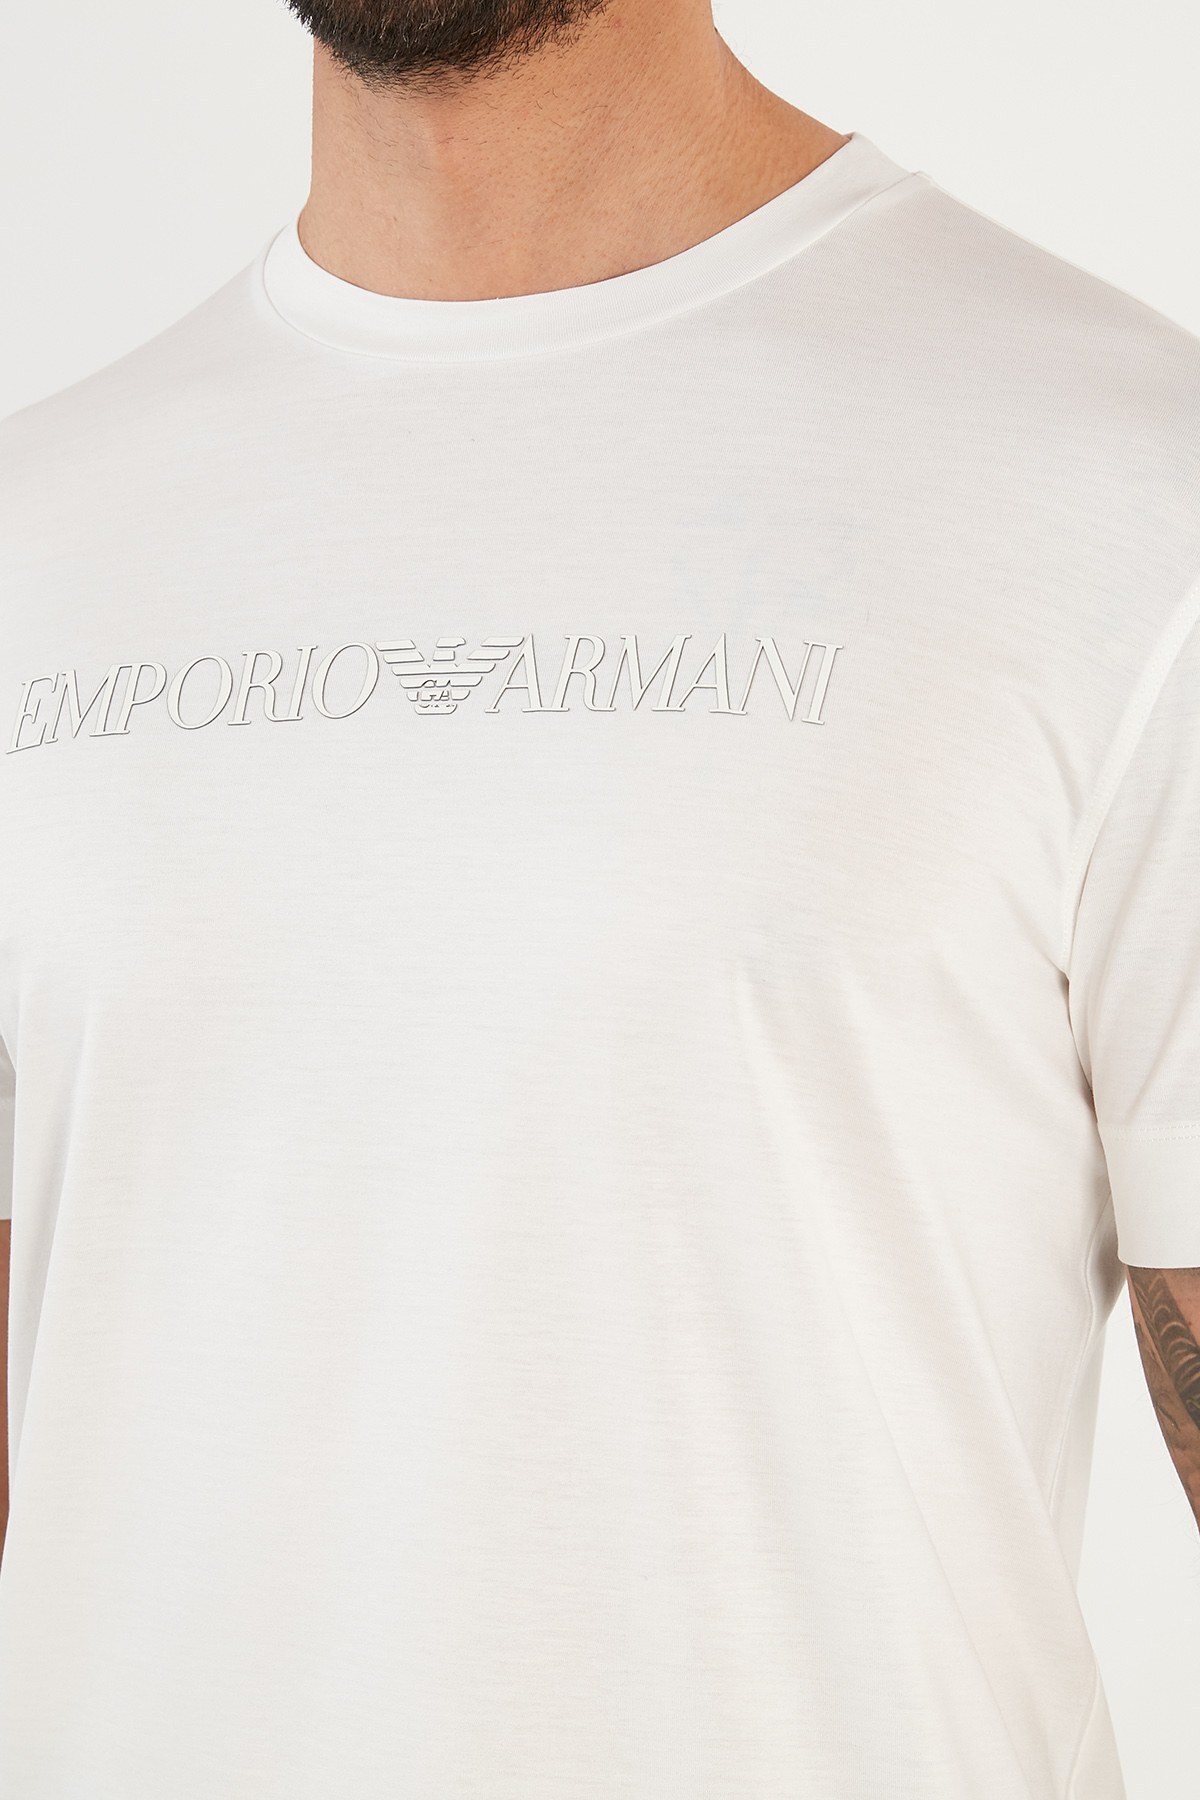 Emporio Armani Logolu Bisiklet Yaka Erkek T Shirt 3K1TAG 1JUVZ 0163 BEYAZ